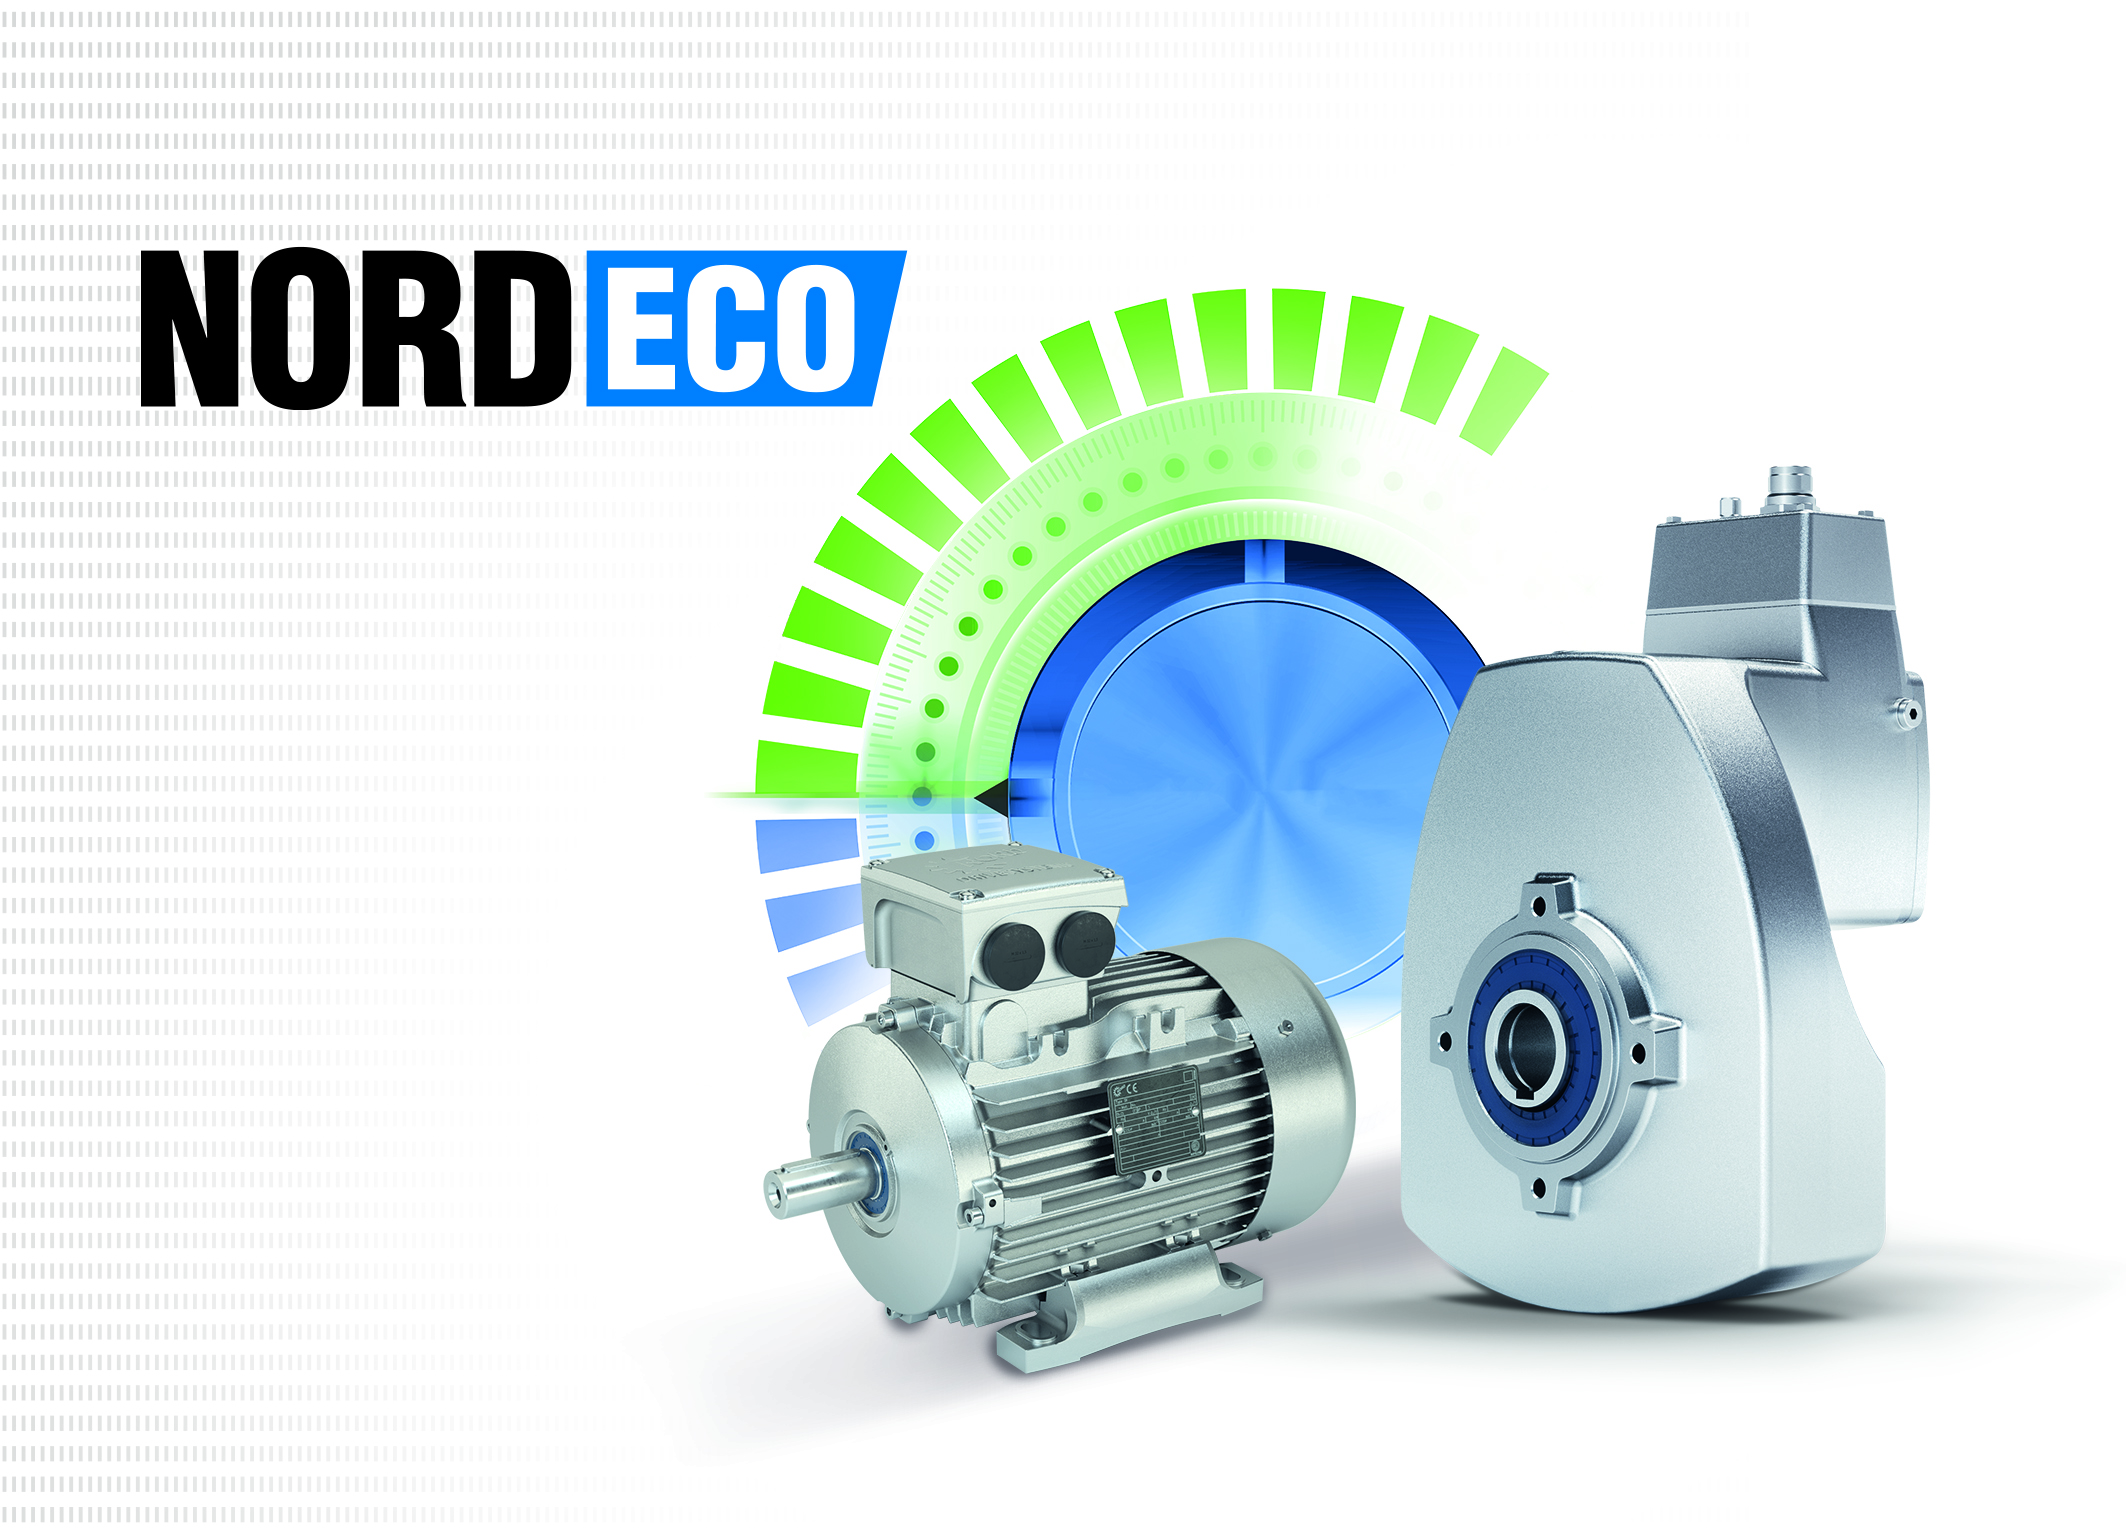 Servicio NORD ECO Soporte competente para sistemas de accionamiento económicos y energéticamente eficientes